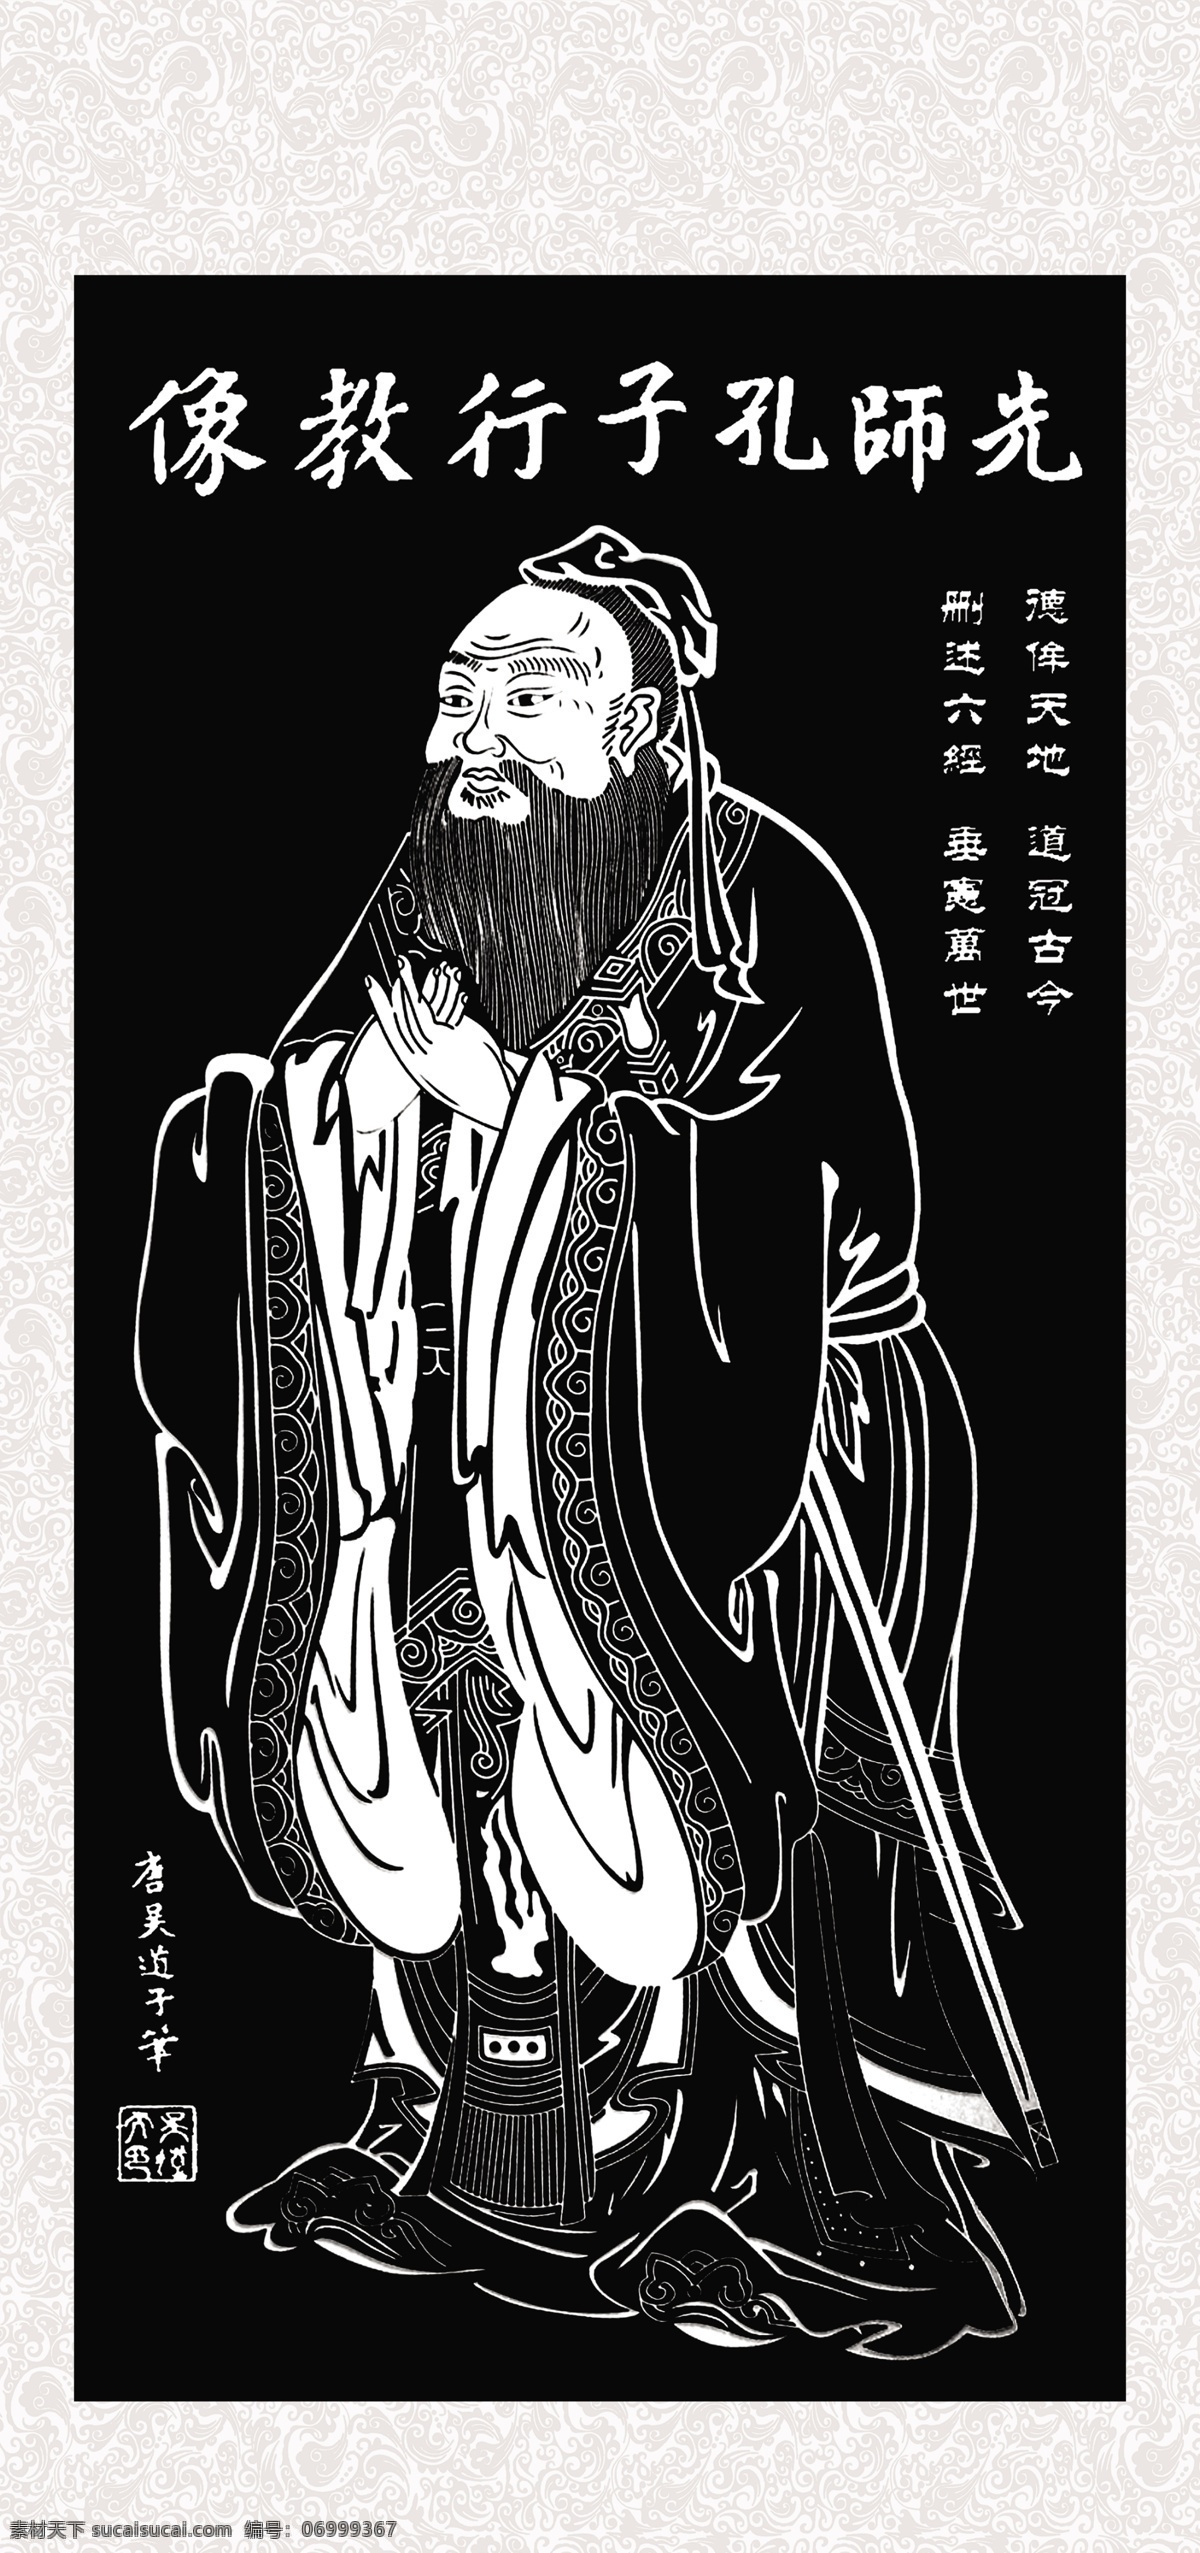 孔子挂画 孔子 儒家 佛学 传统文化 传统 书法 挂画 孔子像 展板模板 广告设计模板 源文件